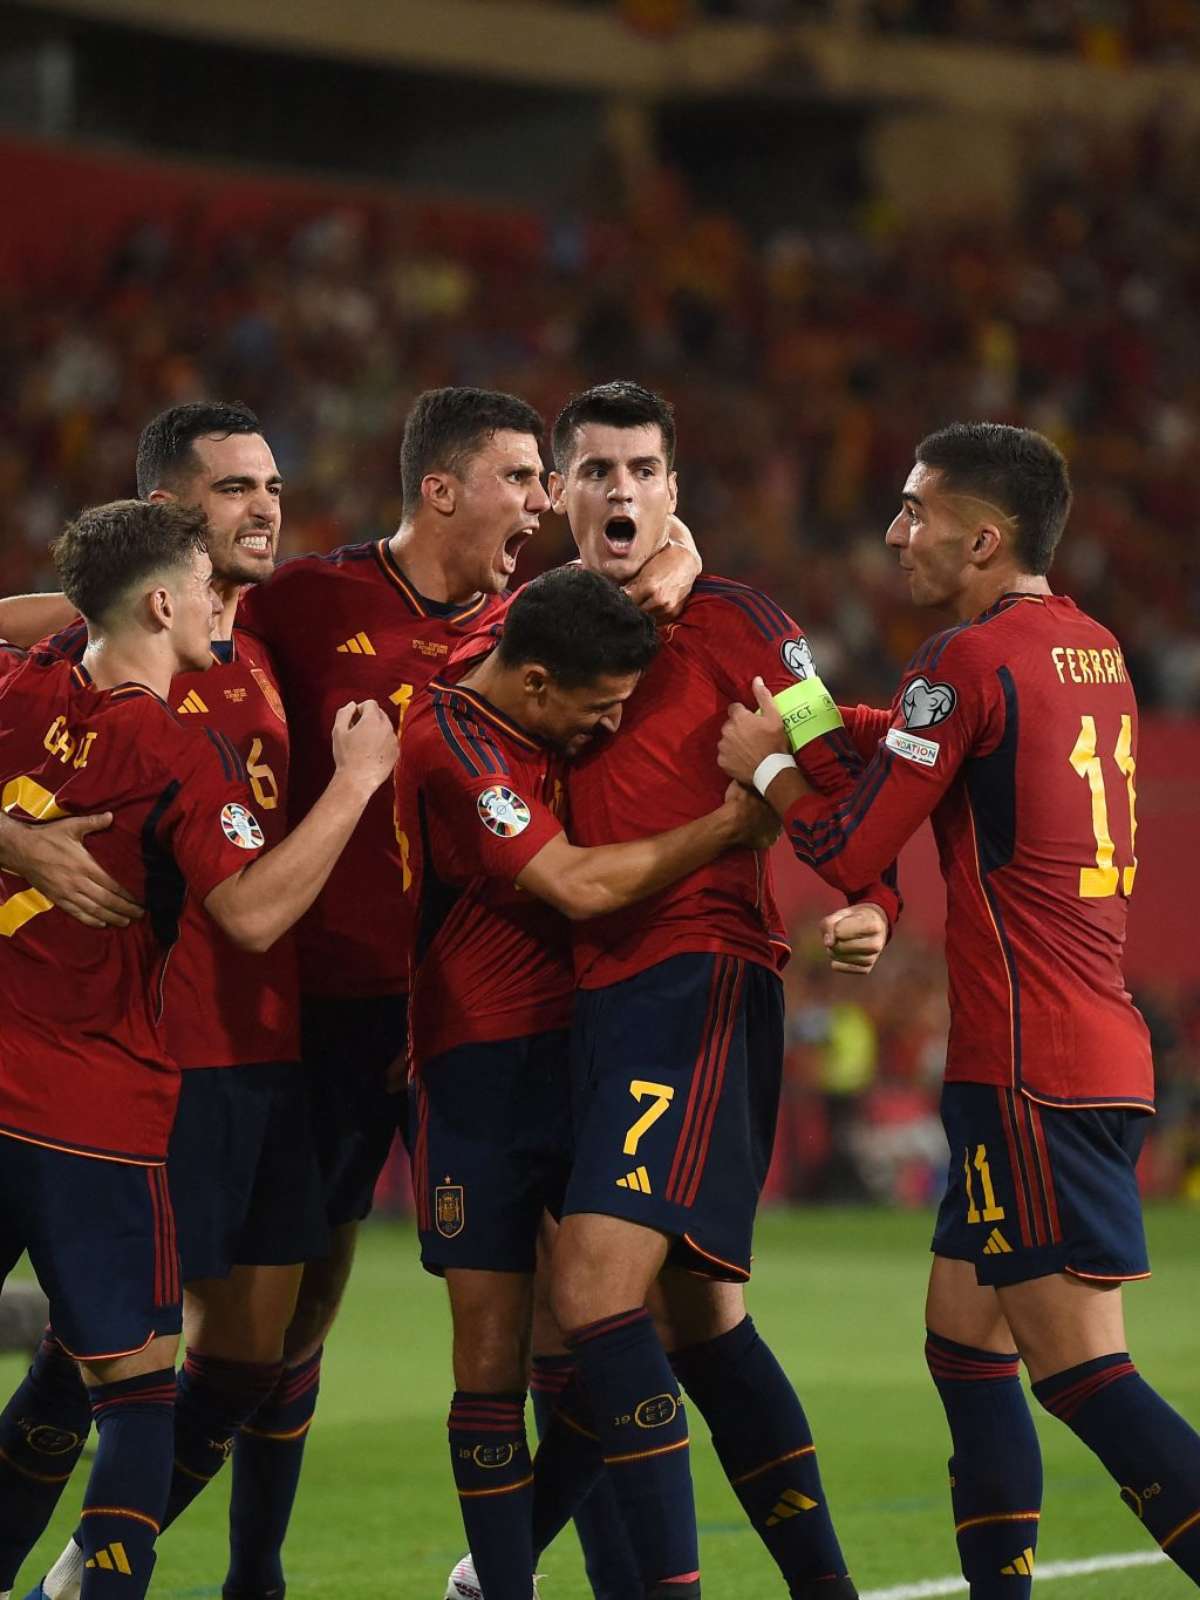 Espanha x Escócia - Eliminatórias UEFA Eurocopa - 7 Rodada Fase de